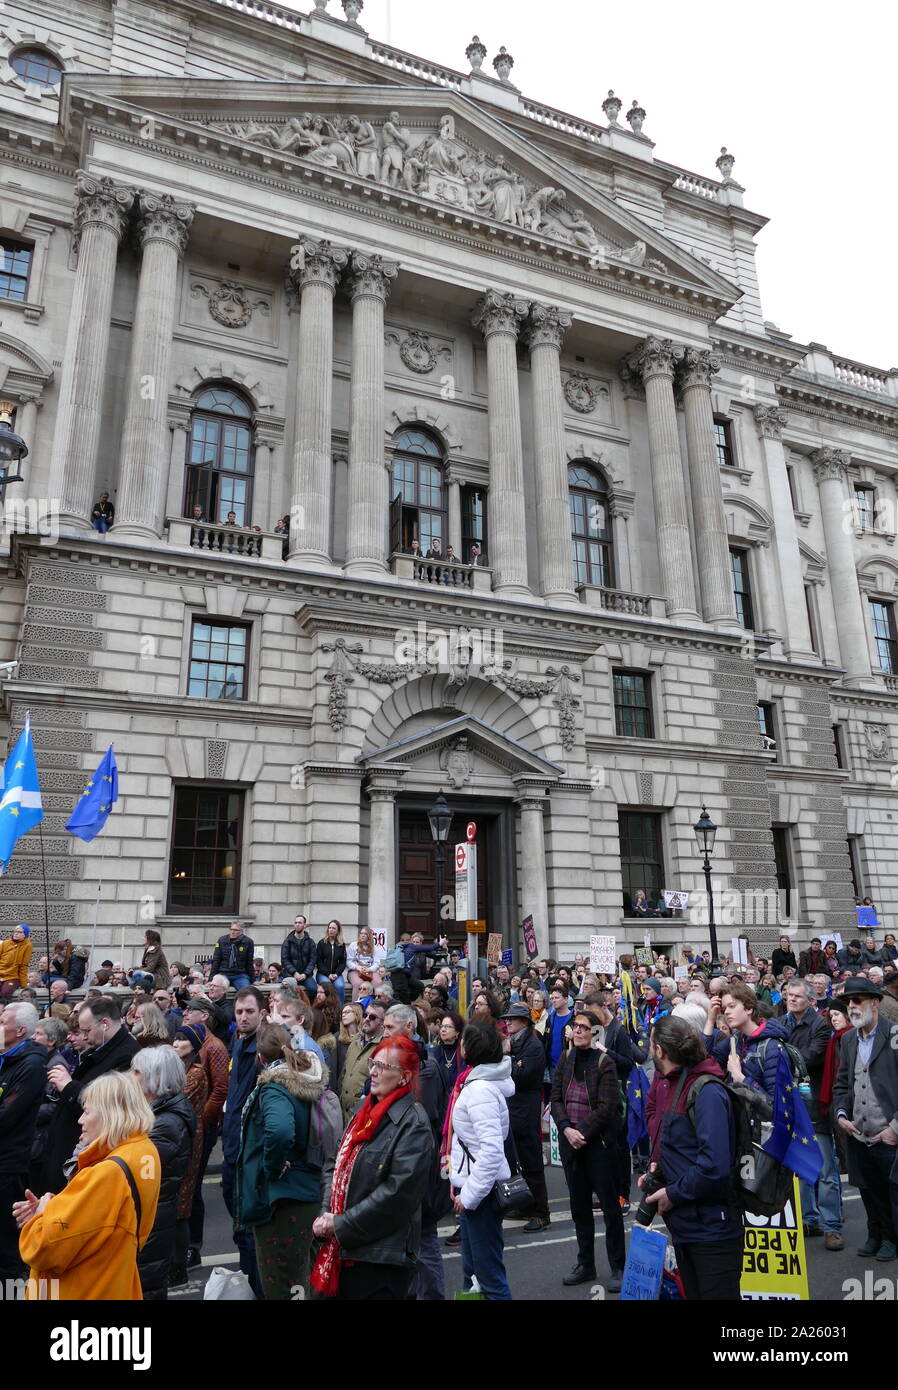 El "Voto popular" de marzo en Parliament Square, Londres. El voto popular de marzo tuvo lugar en Londres el 23 de marzo de 2019 como parte de una serie de manifestaciones para protestar contra Brexit, convocar a un nuevo referendo, y pedir al Gobierno británico para revocar el artículo 50. Trajo a la capital a cientos de miles de manifestantes, o más de un millón de personas según los organizadores. Foto de stock